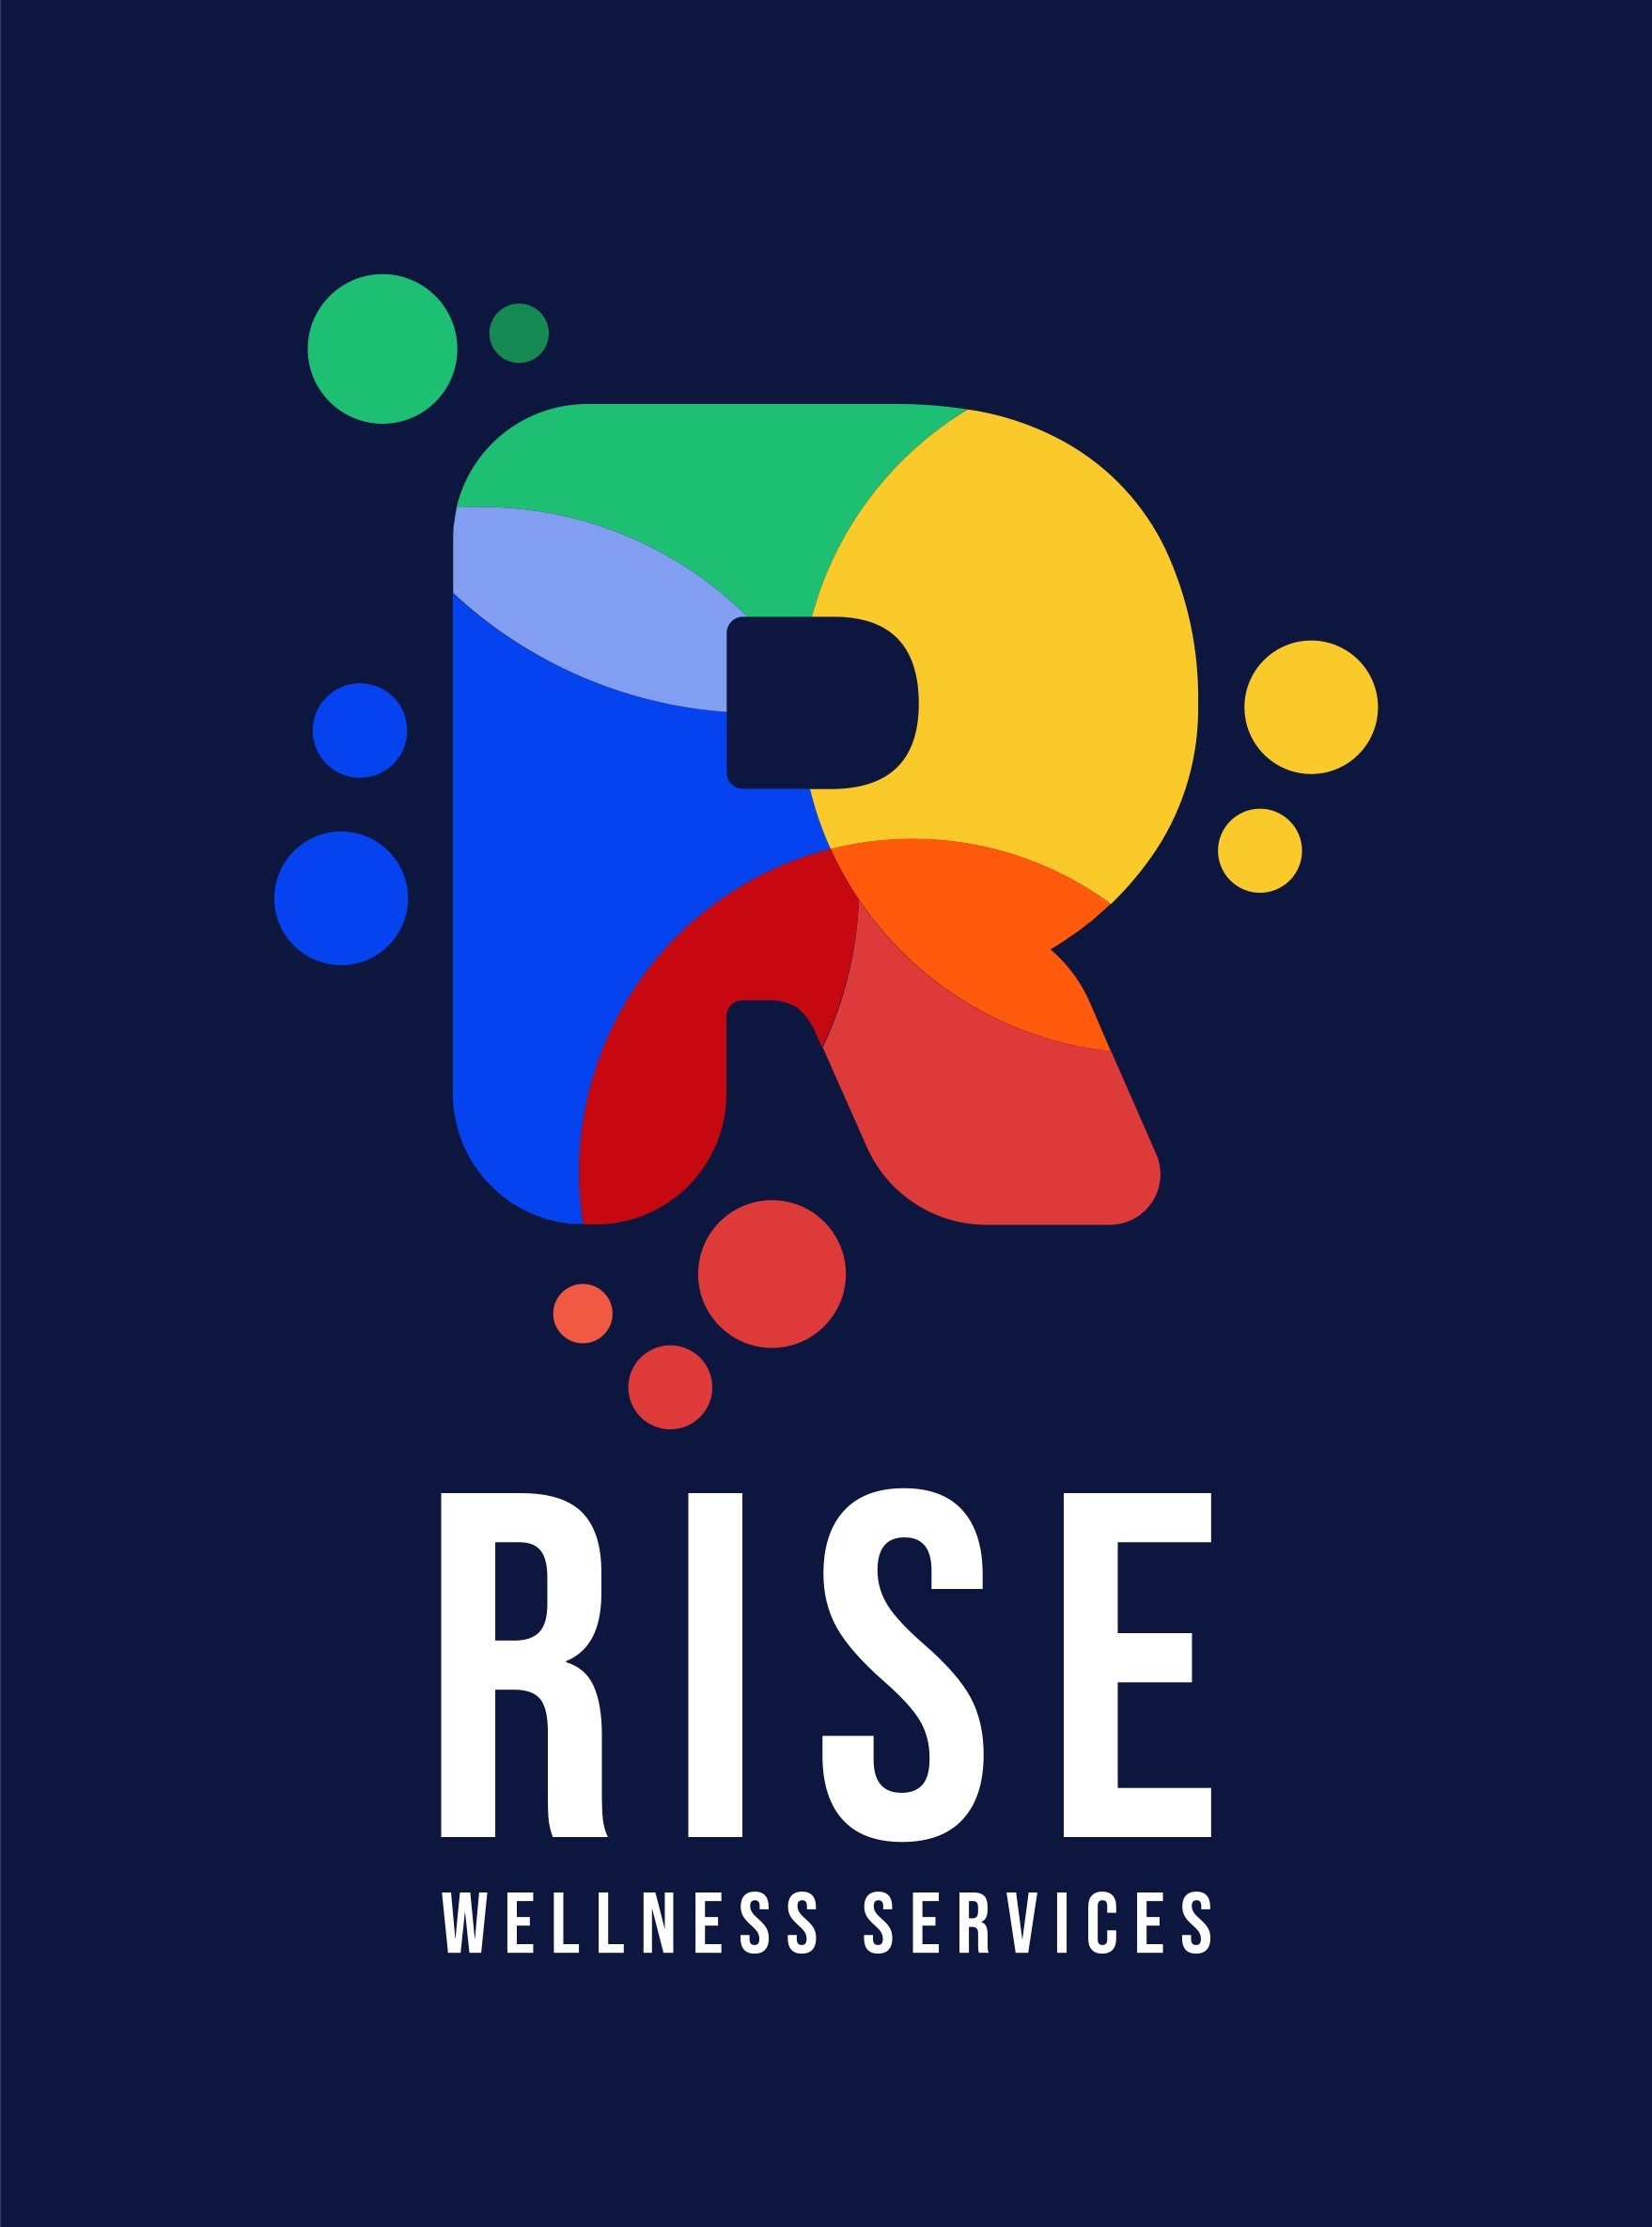 RISE Wellness Services - RISE Wellness Services